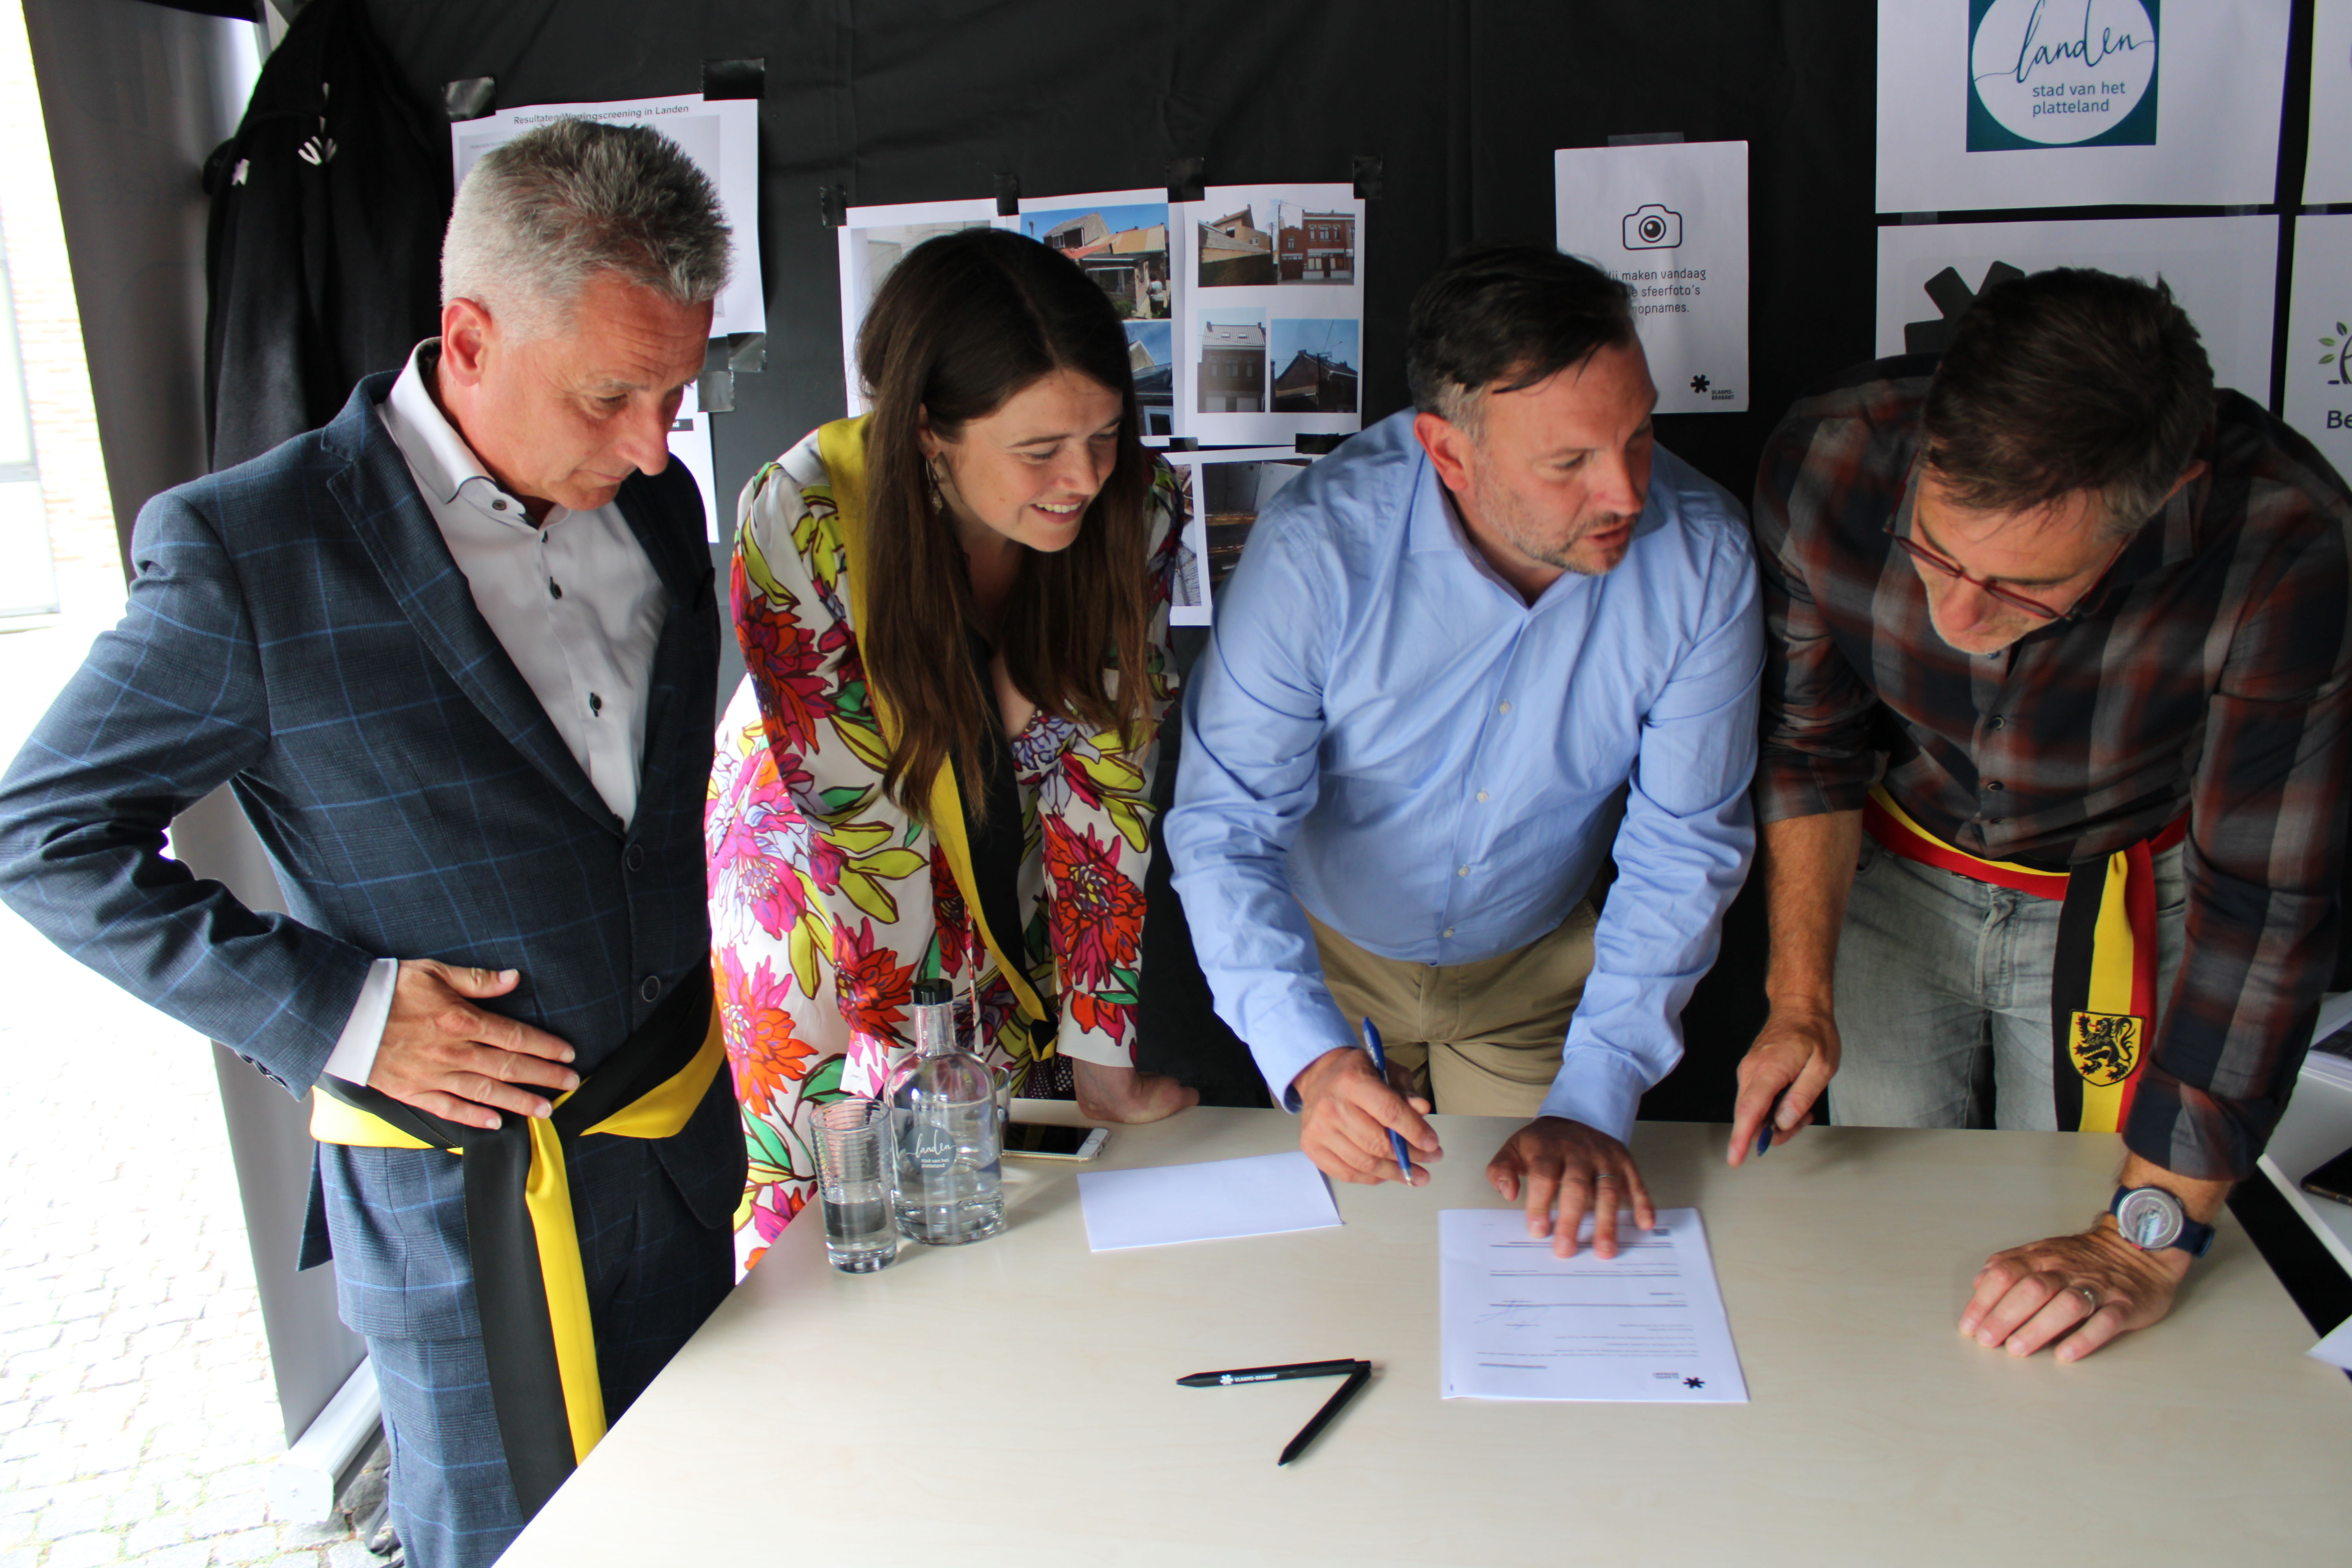 Vertegenwoordigers van de provincie Vlaams-Brabant en de stad Landen tekenden op 29 juni een samenwerkingsovereenkomst voor bijkomend renovatiebudget met uitgestelde terugbetaling